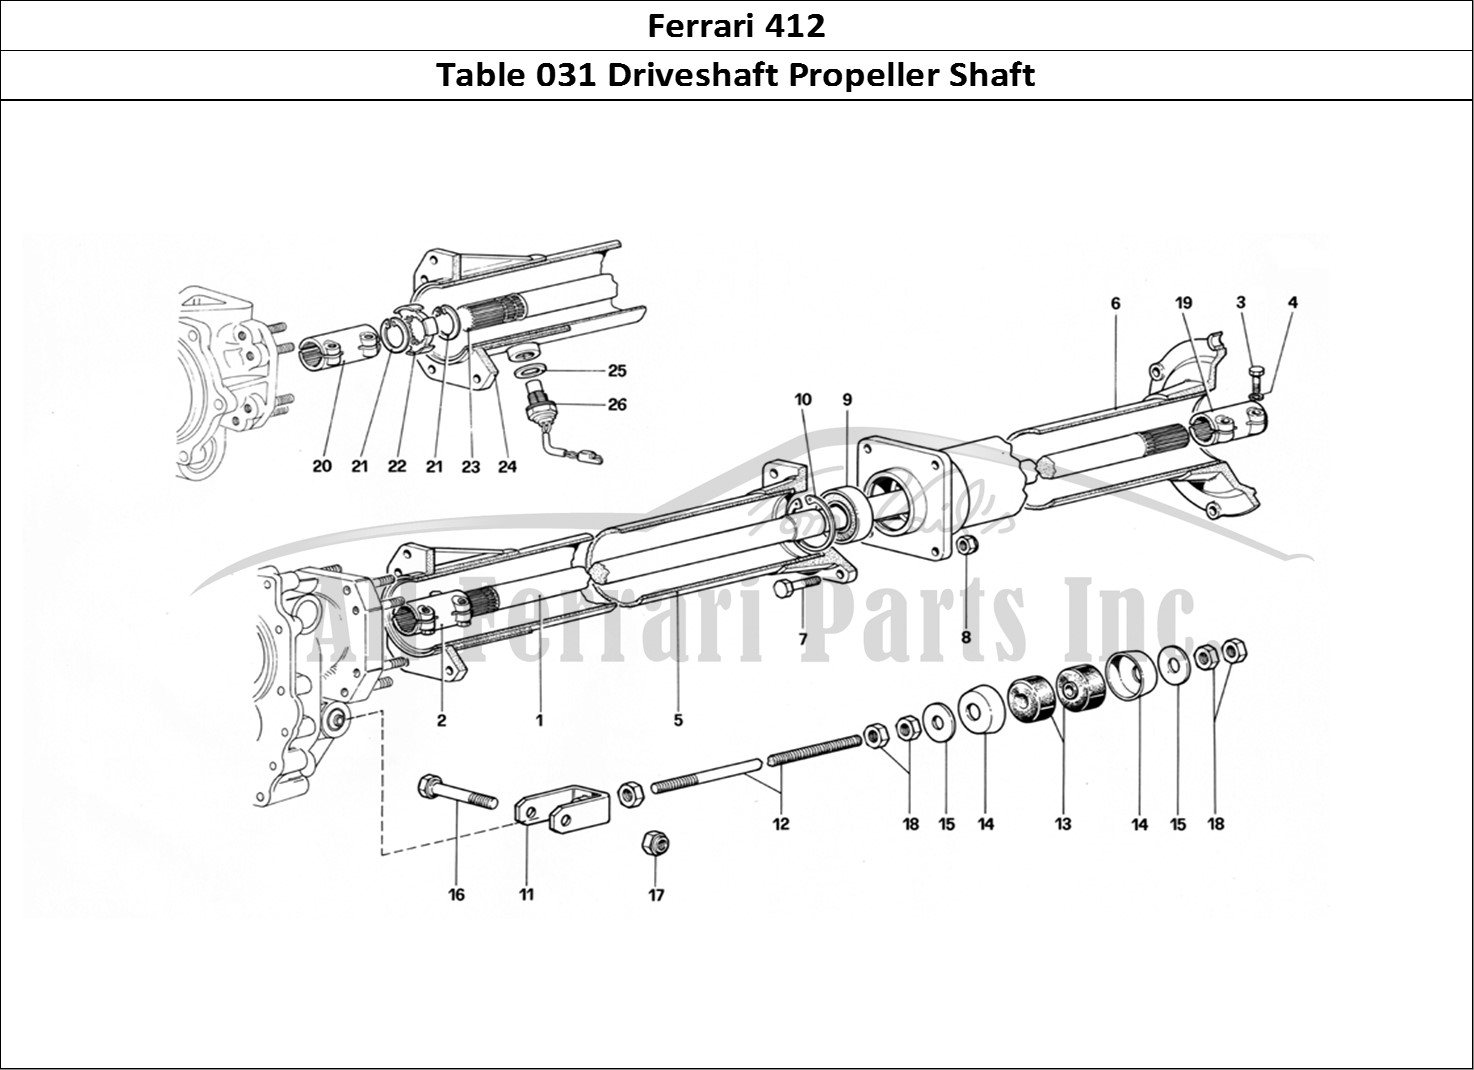 Ferrari Parts Ferrari 412 (Mechanical) Page 031 Propeller Shaft